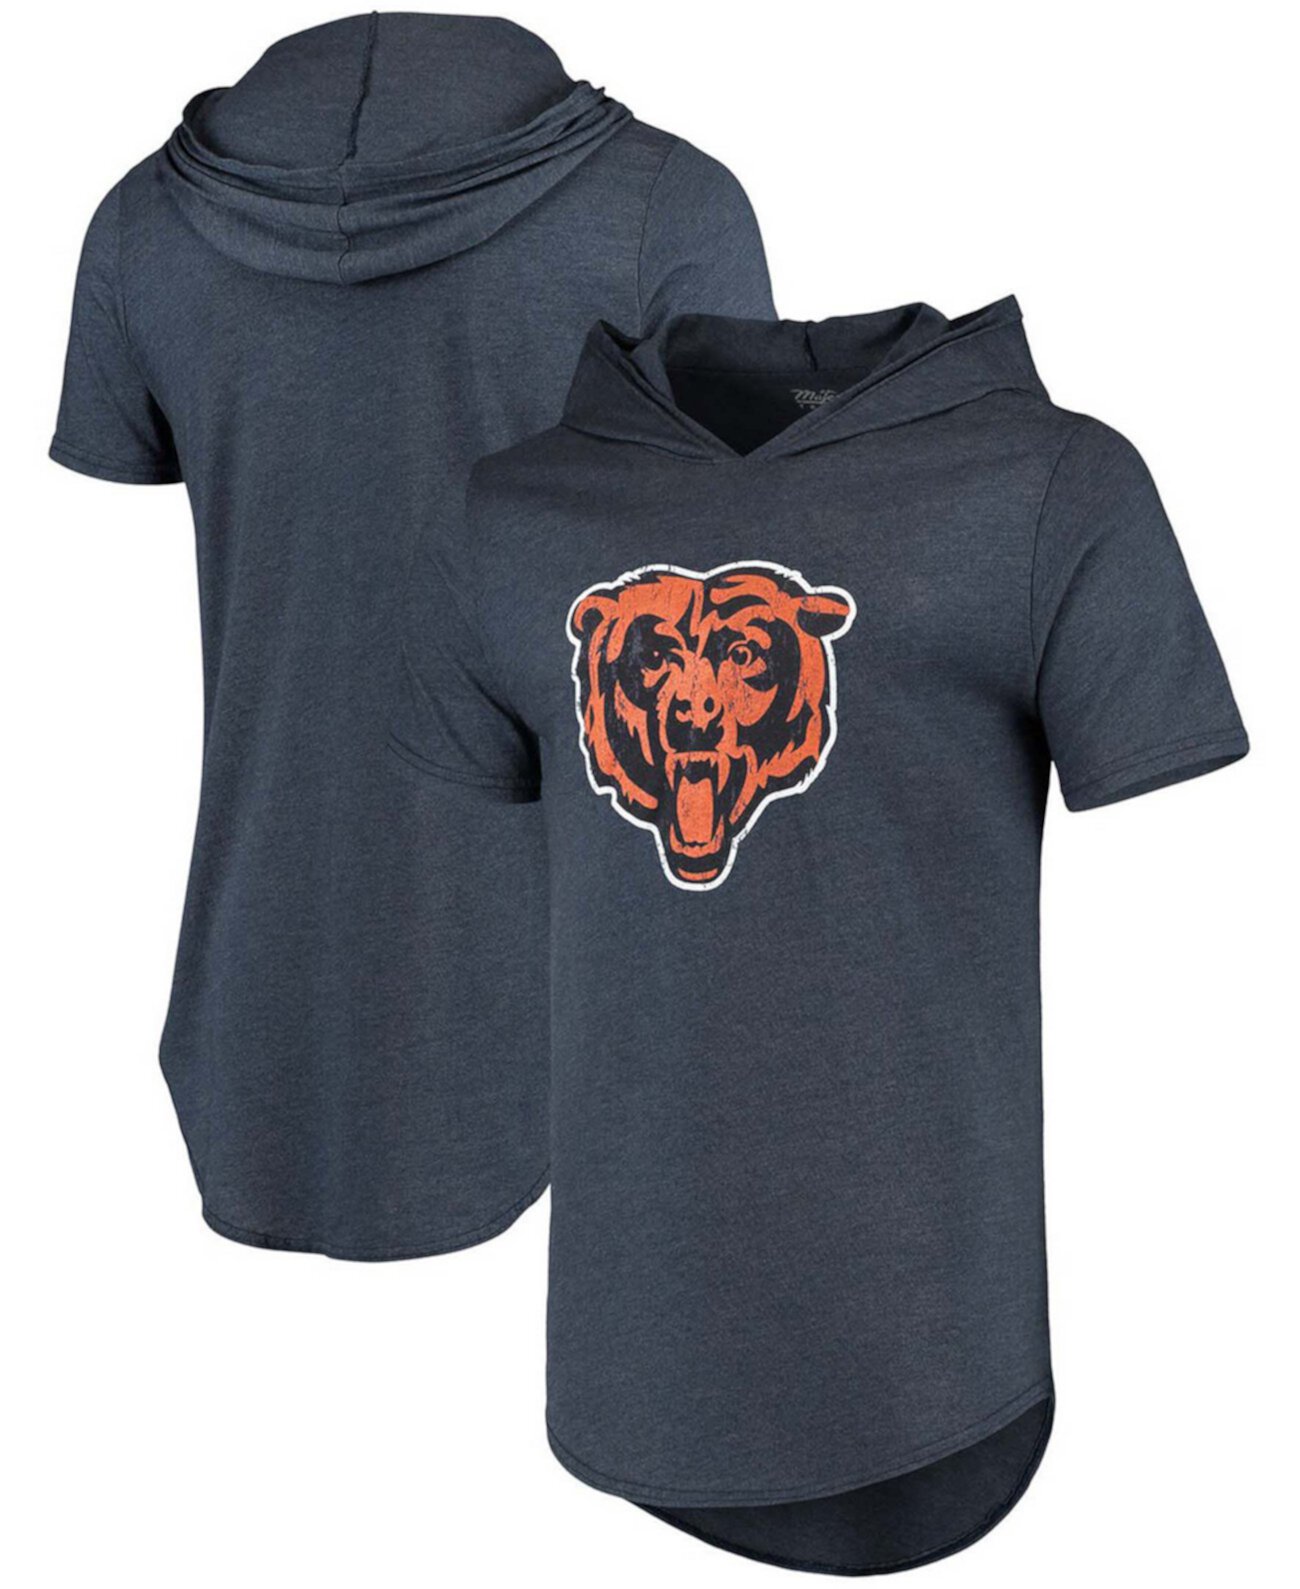 Мужская футболка с капюшоном из трех смесовых смесей с логотипом Navy Chicago Bears Primary Majestic